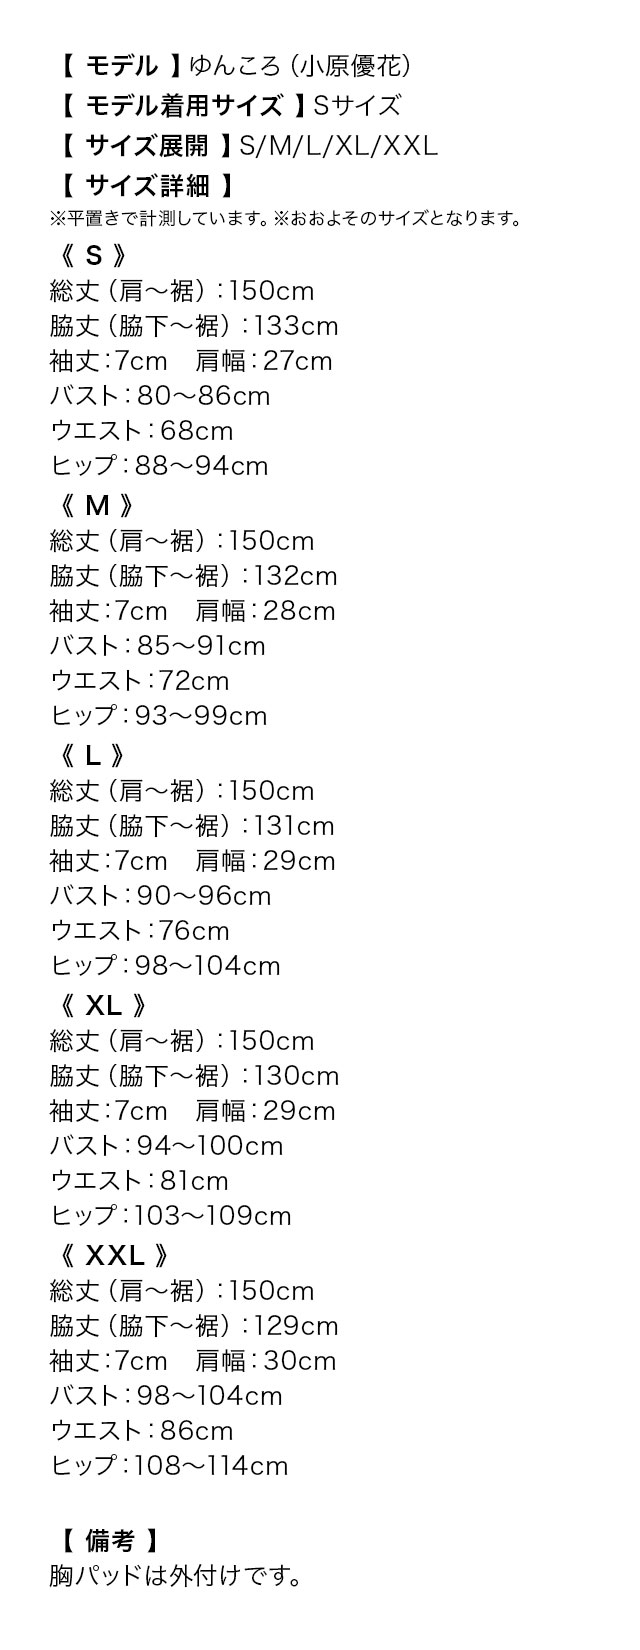 ノースリーブフリル袖デコルテカット総レースAラインロングドレスのサイズ表